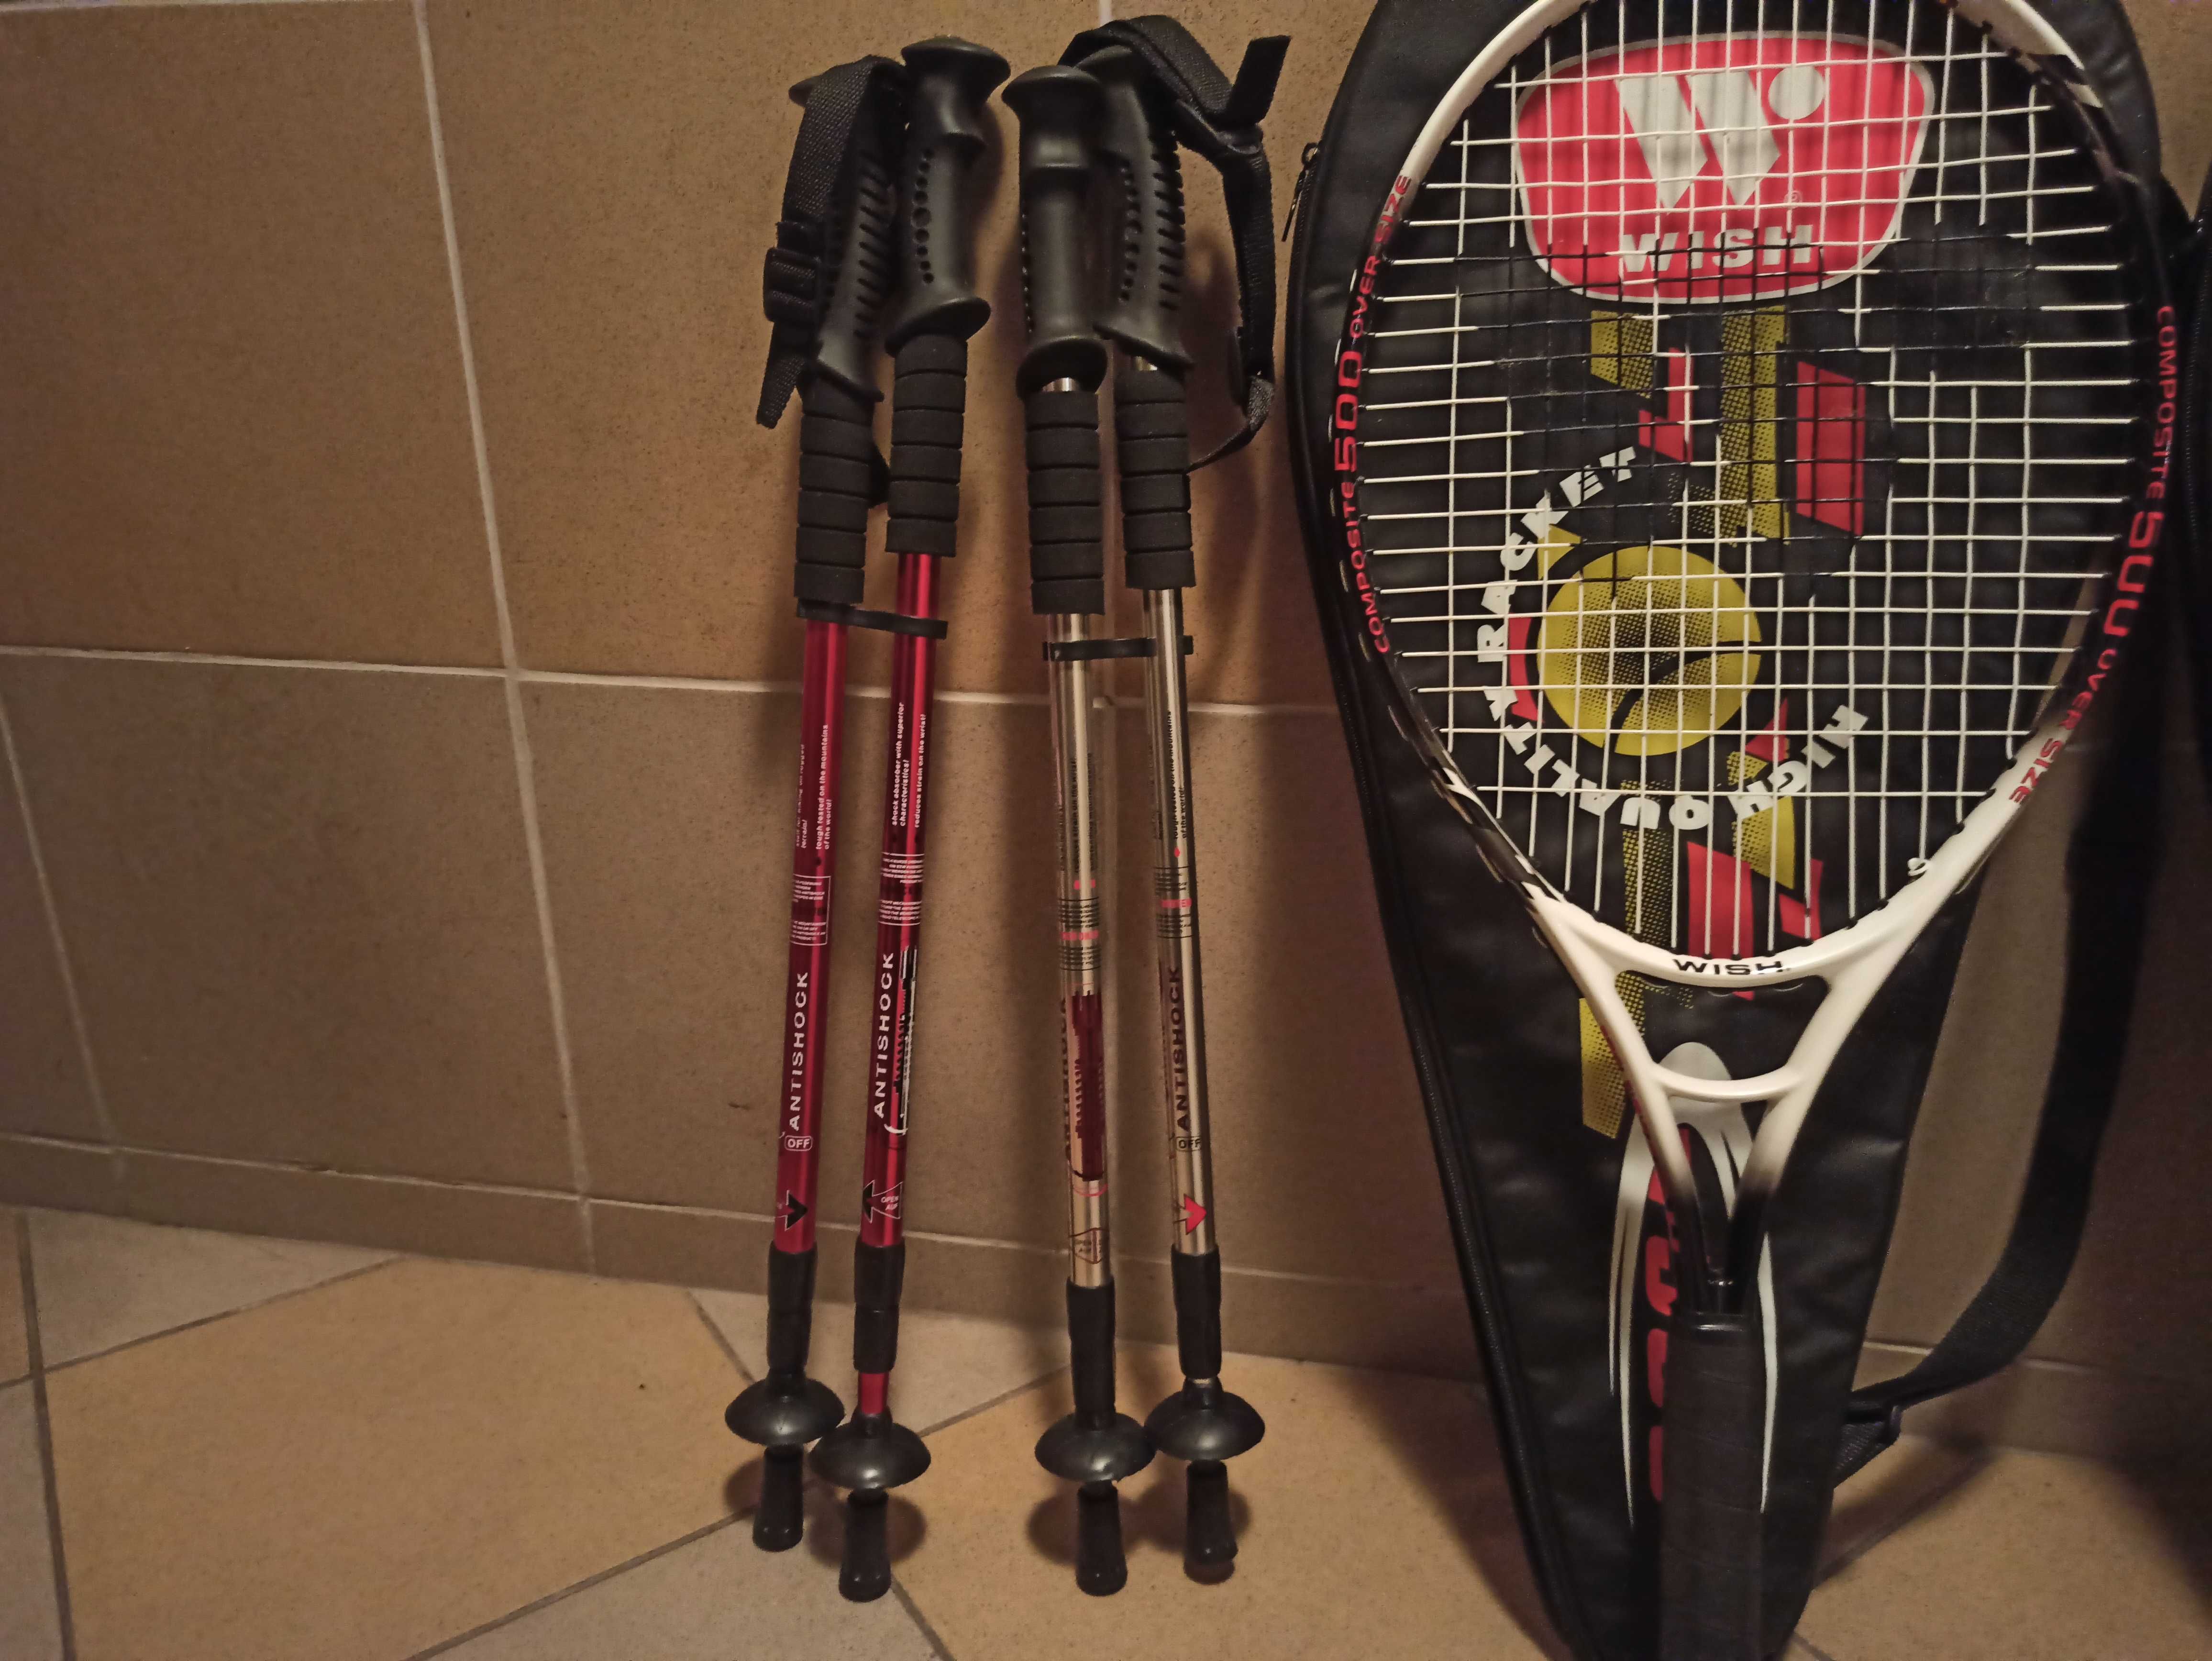 zestaw sportowy (rakiety do tenisa, badmintona, kijki nordic walking)